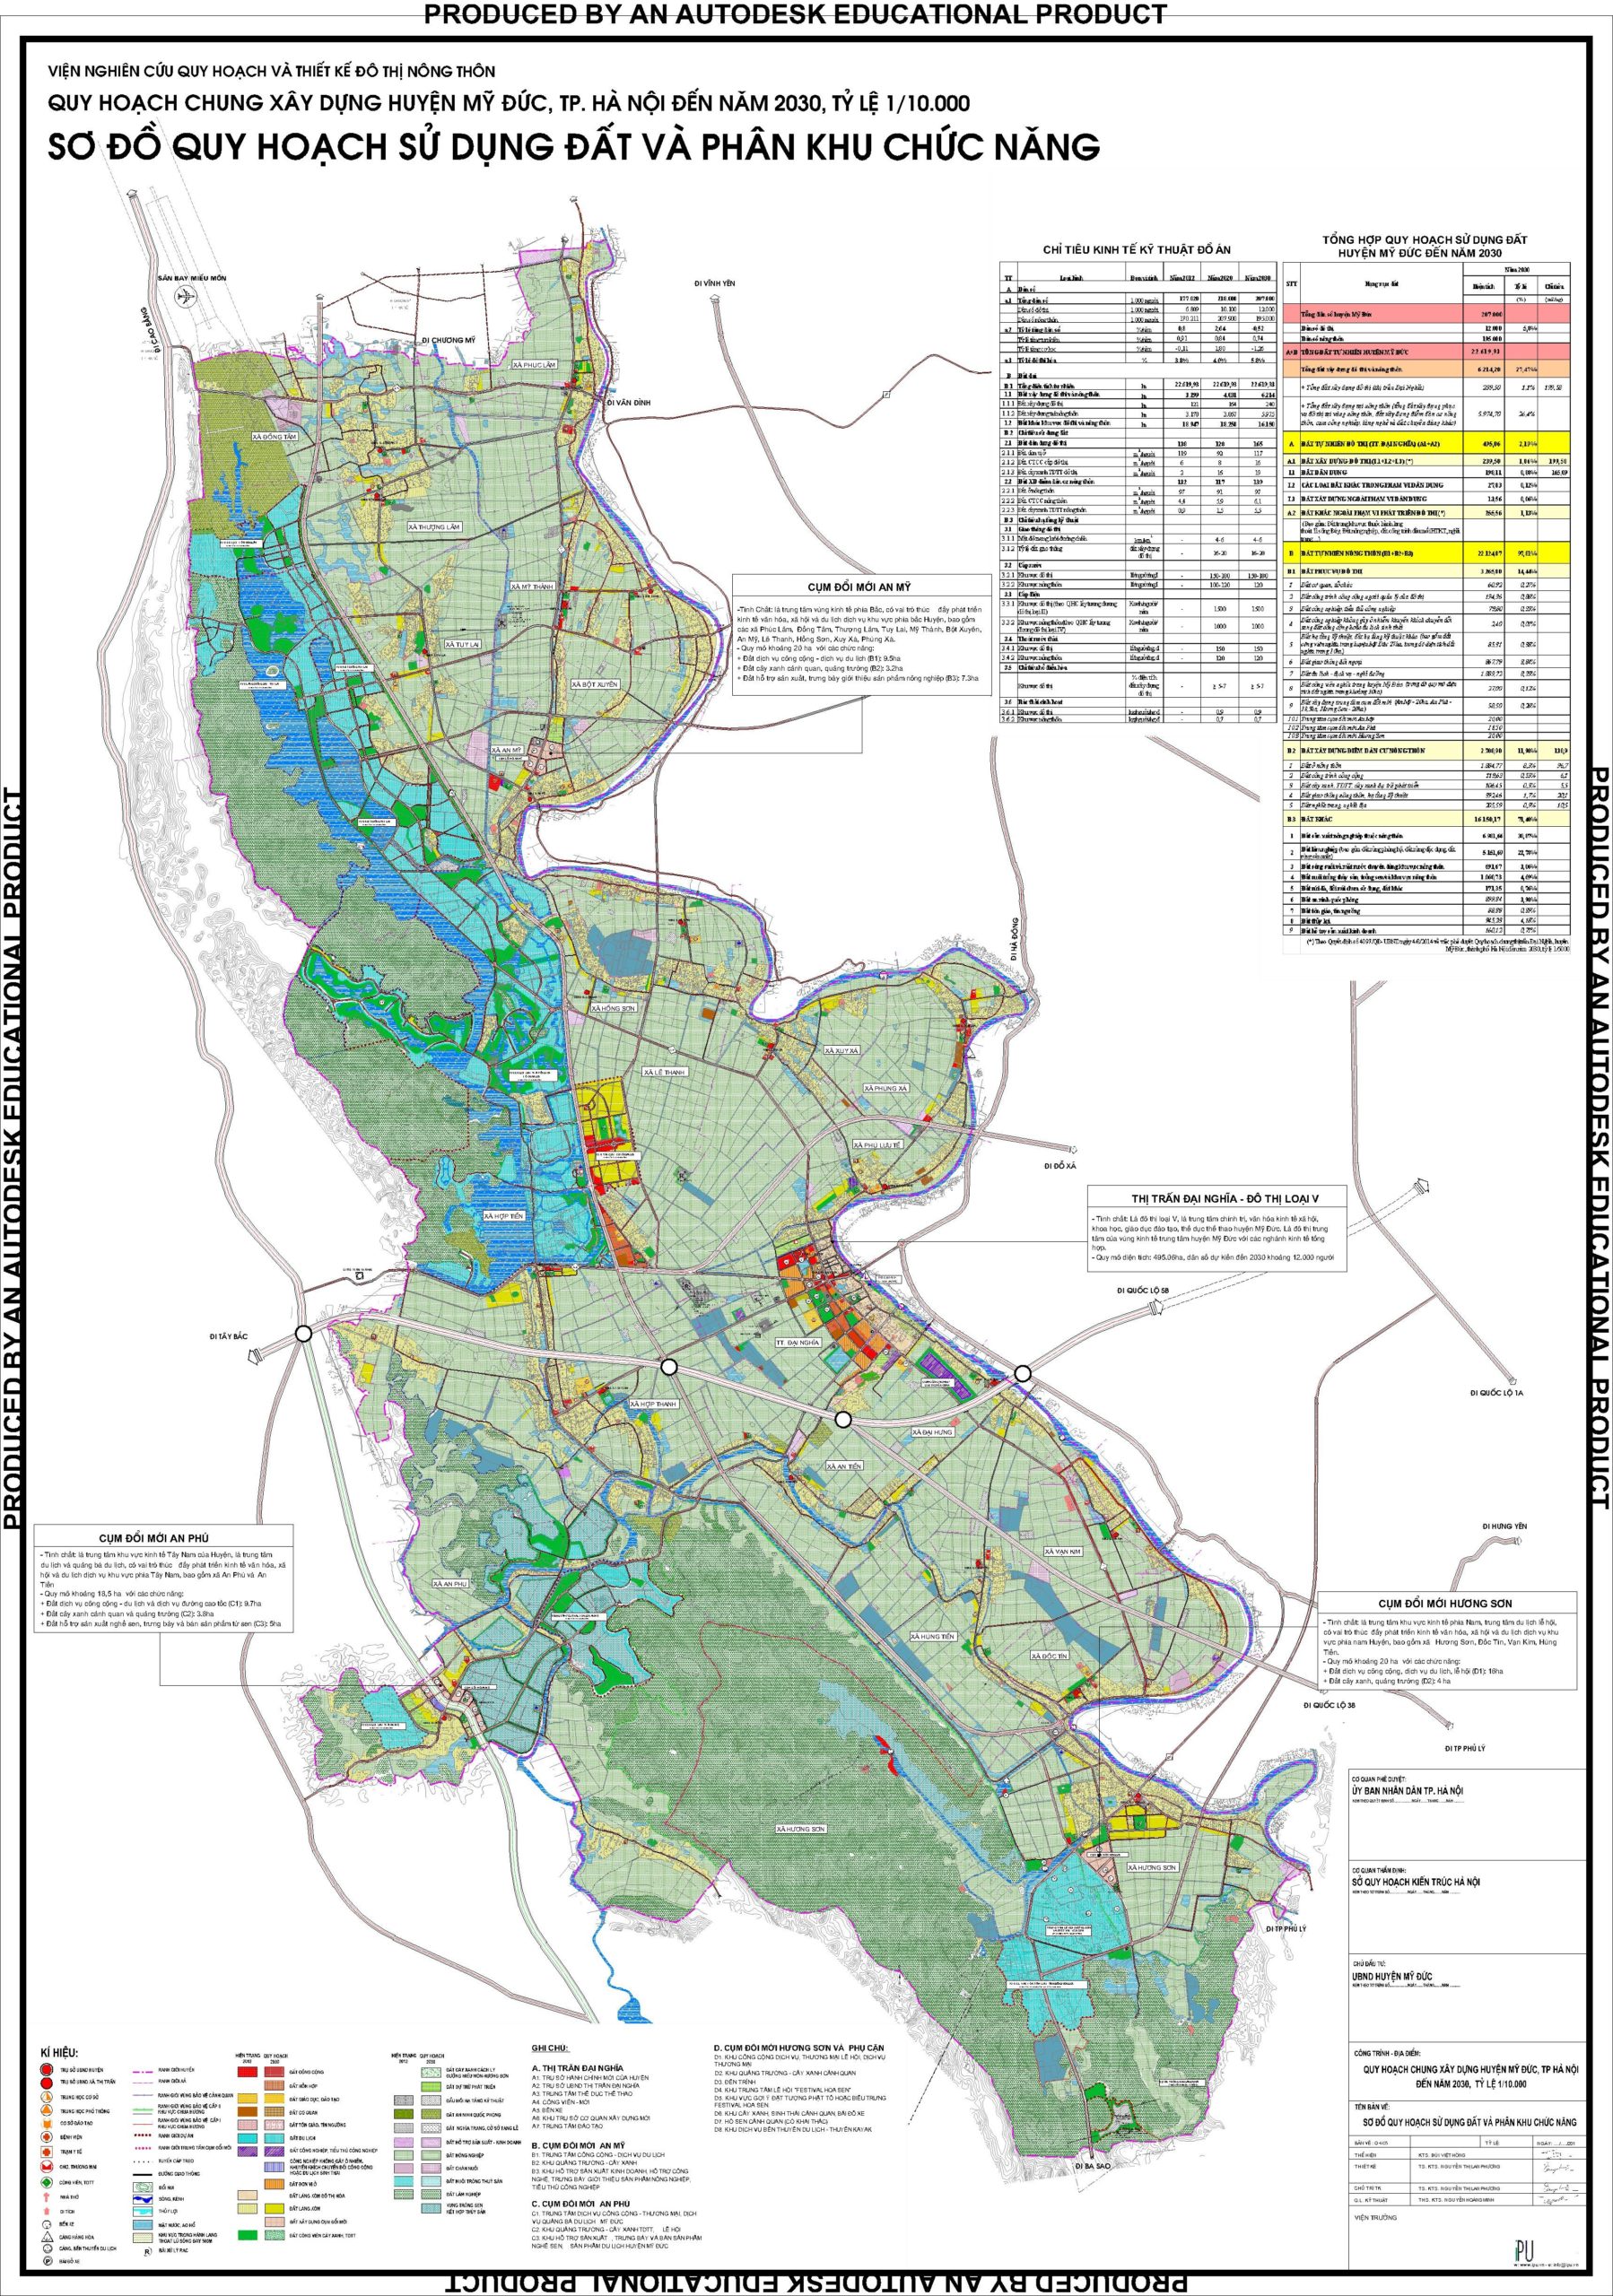 Bản đồ hành chính huyện Mỹ Đức TP Hà Nội 2024:
Cùng đến với bản đồ hành chính huyện Mỹ Đức TP Hà Nội 2024 để khám phá những thay đổi đầy tích cực của khu vực này. Với tầm nhìn khắc phục nhanh chóng những khó khăn, dự án đô thị Mỹ Đức đã mang đến một khu vực sống xanh, hiện đại và đáng sống.